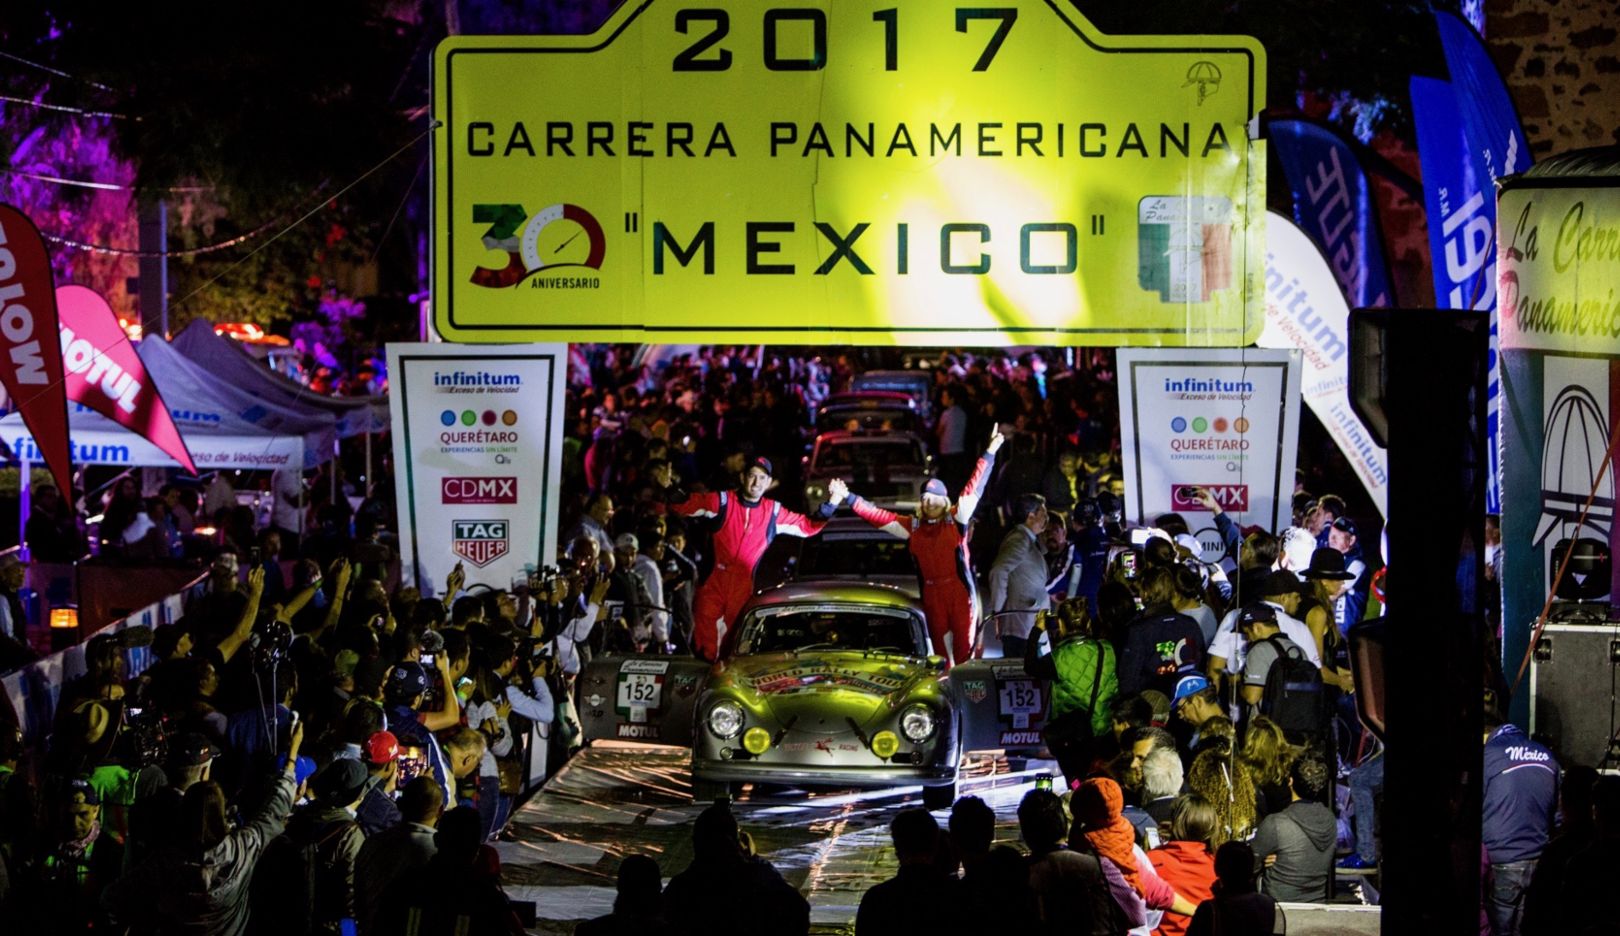 Mit der Carrera Panamericana begann für Renée Brinkerhoff (rechts auf der Siegerrampe) 2017 das Abenteuer Valkyrie Racing 356 World Rallye Tour. Gemeinsam mit Navigator Roberto Mendoza feierte sie den Klassensieg des Langstreckenrennens.